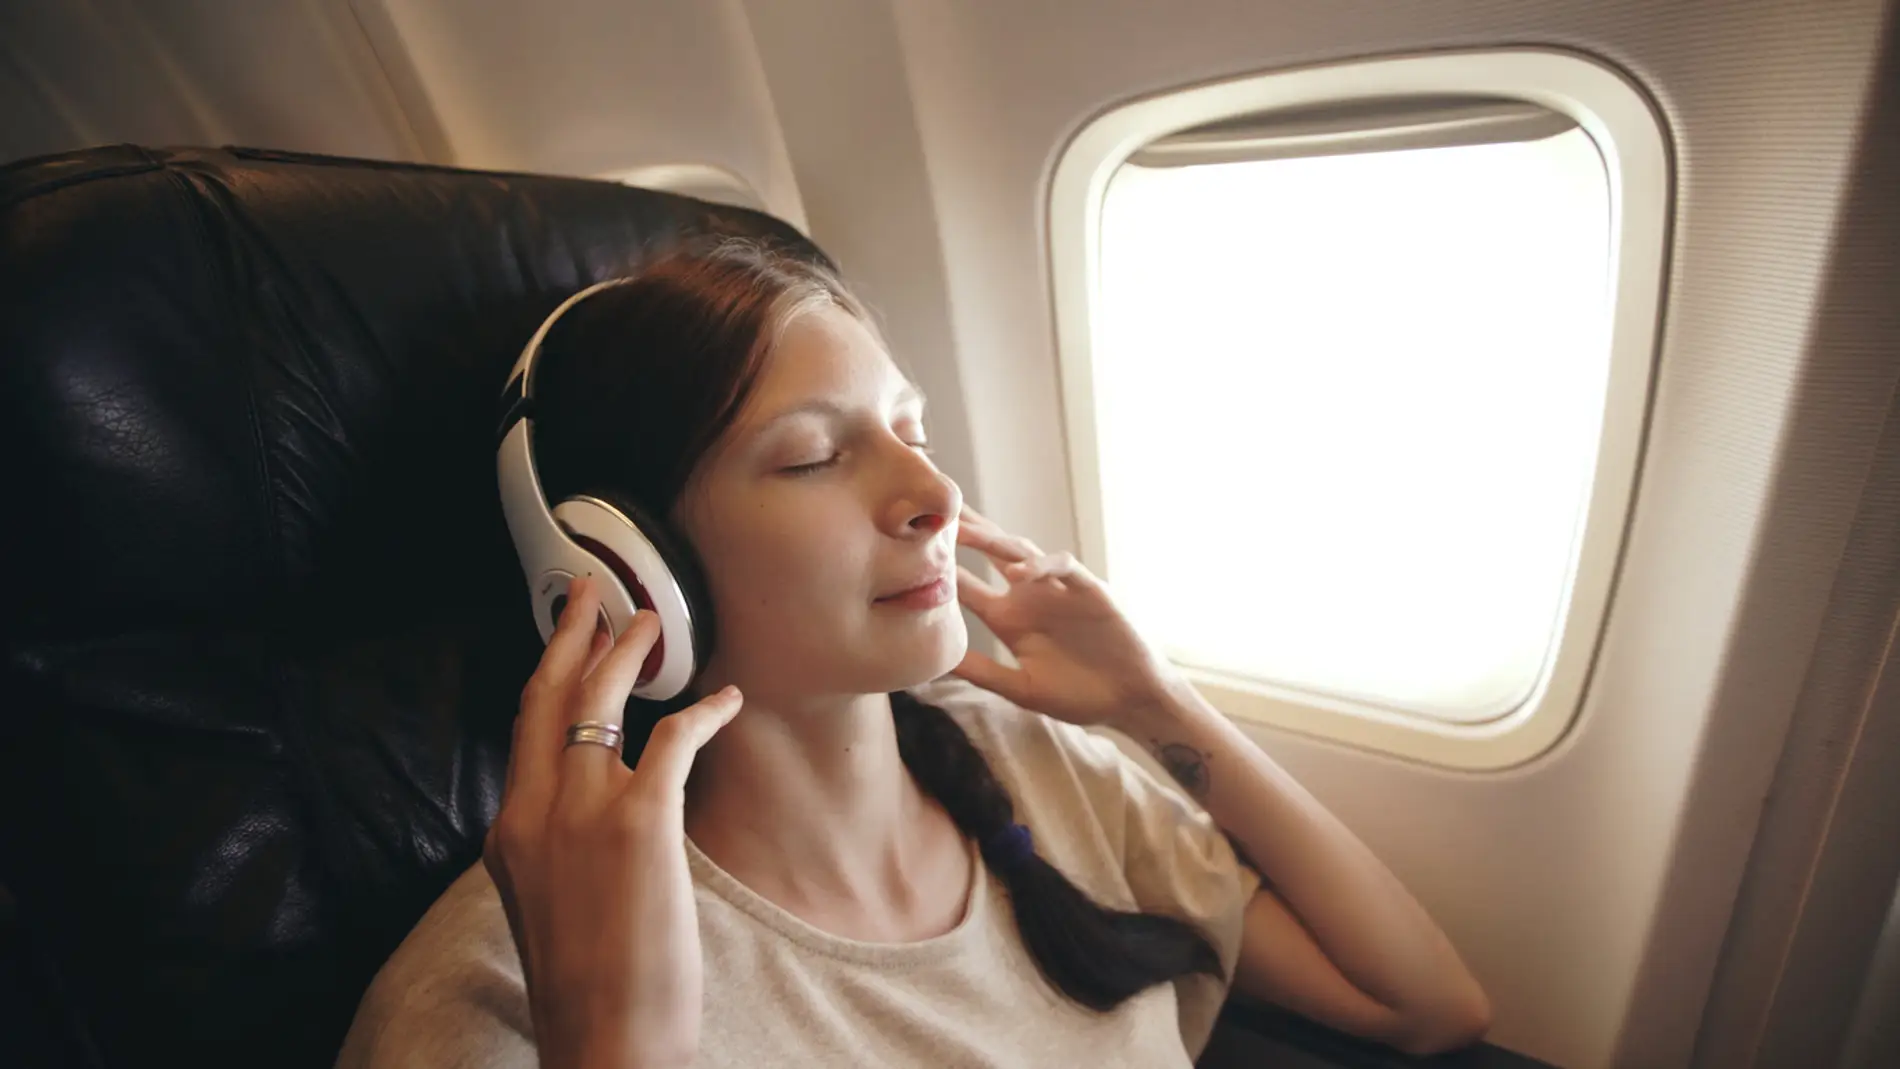 Joven escucha música con auriculares inalámbricos en el avión